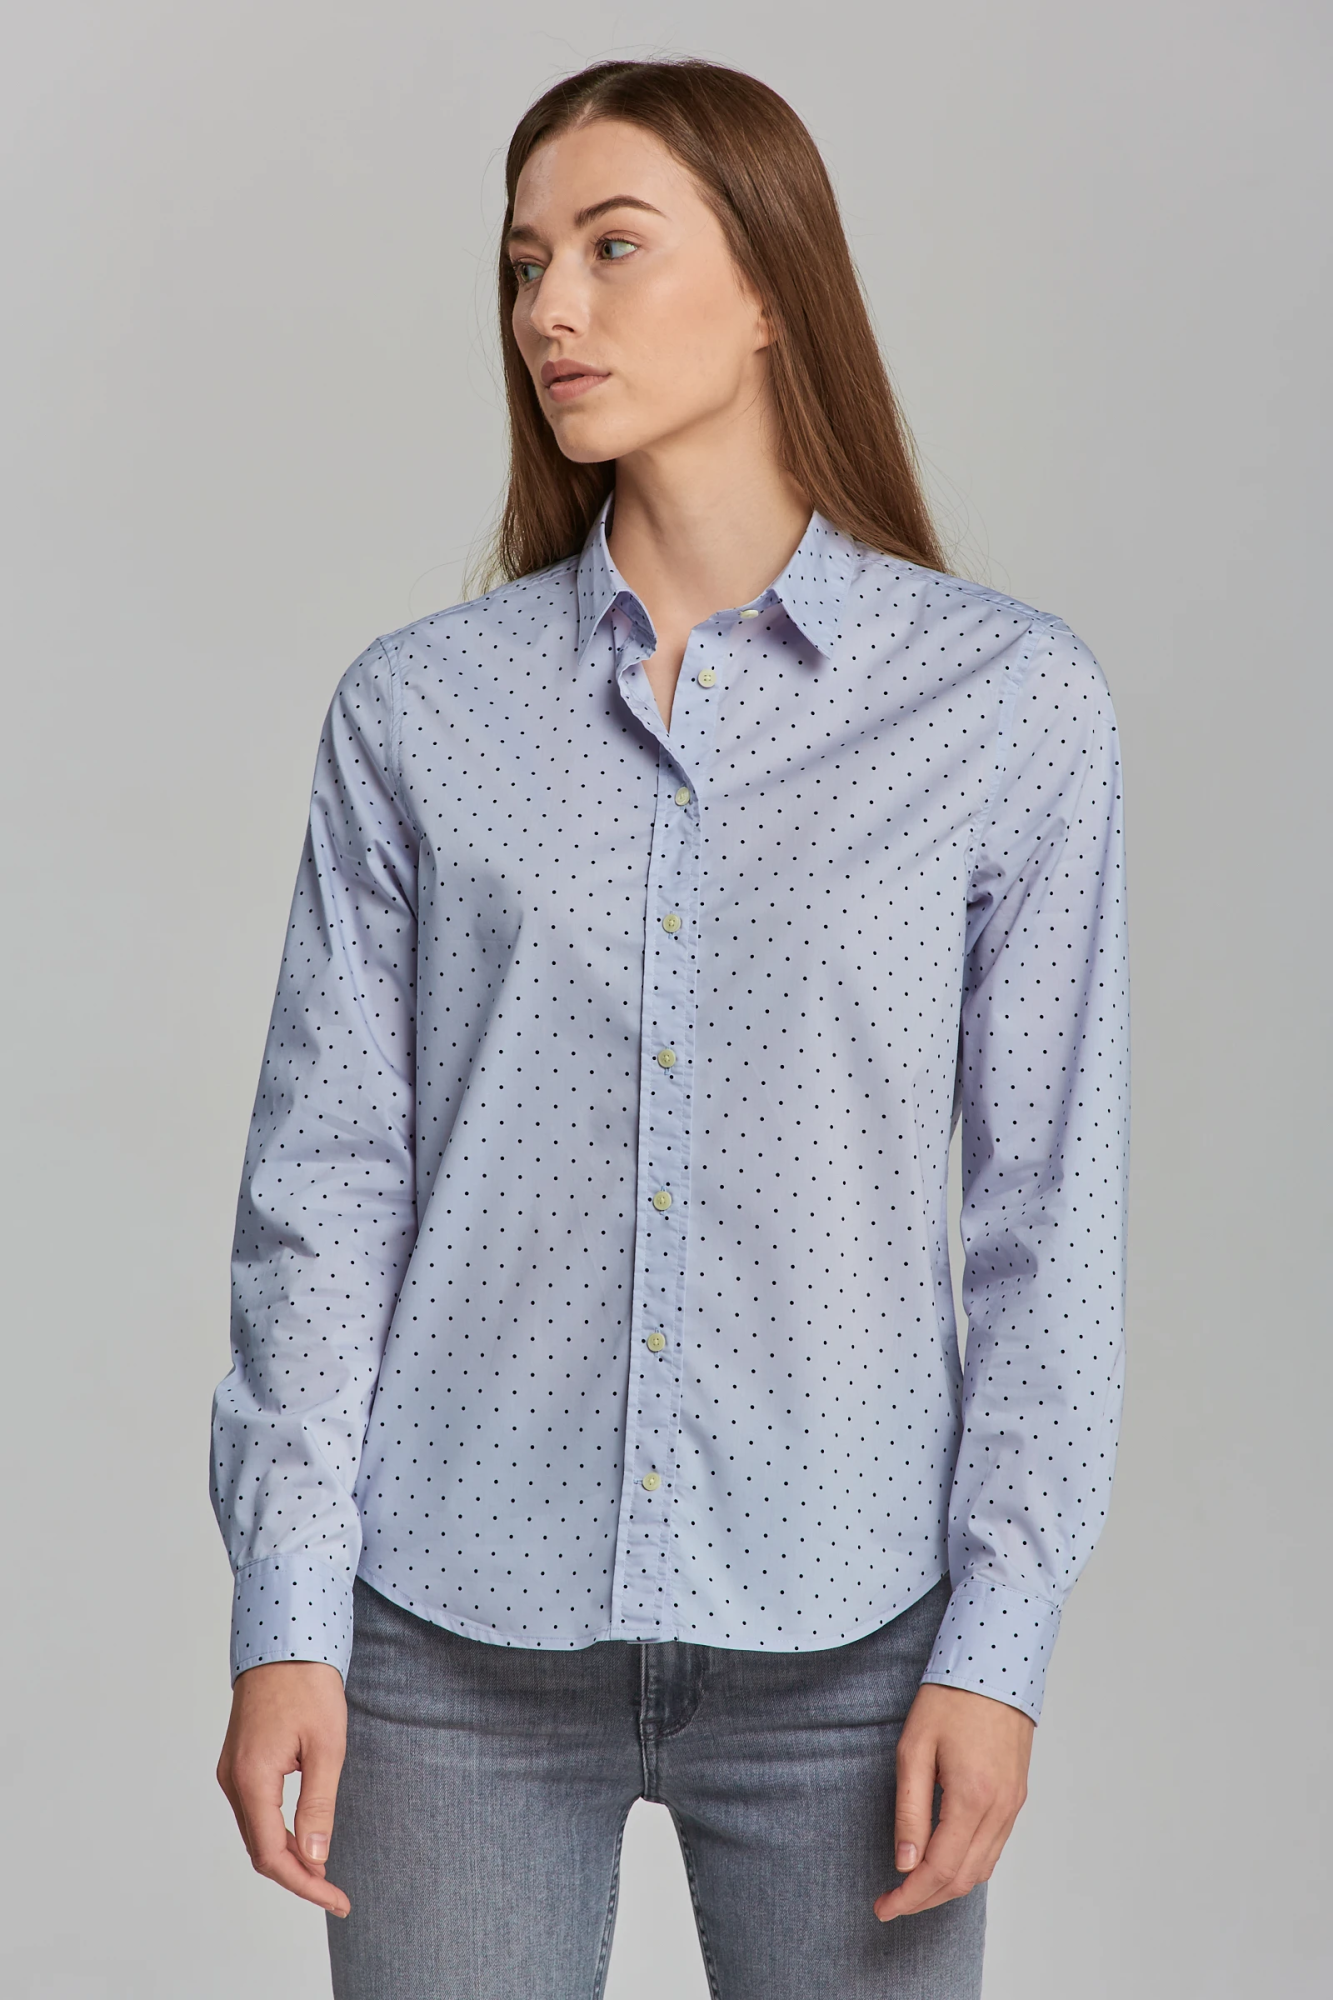 Женская рубашка Gant, голубая, цвет голубой, размер 44